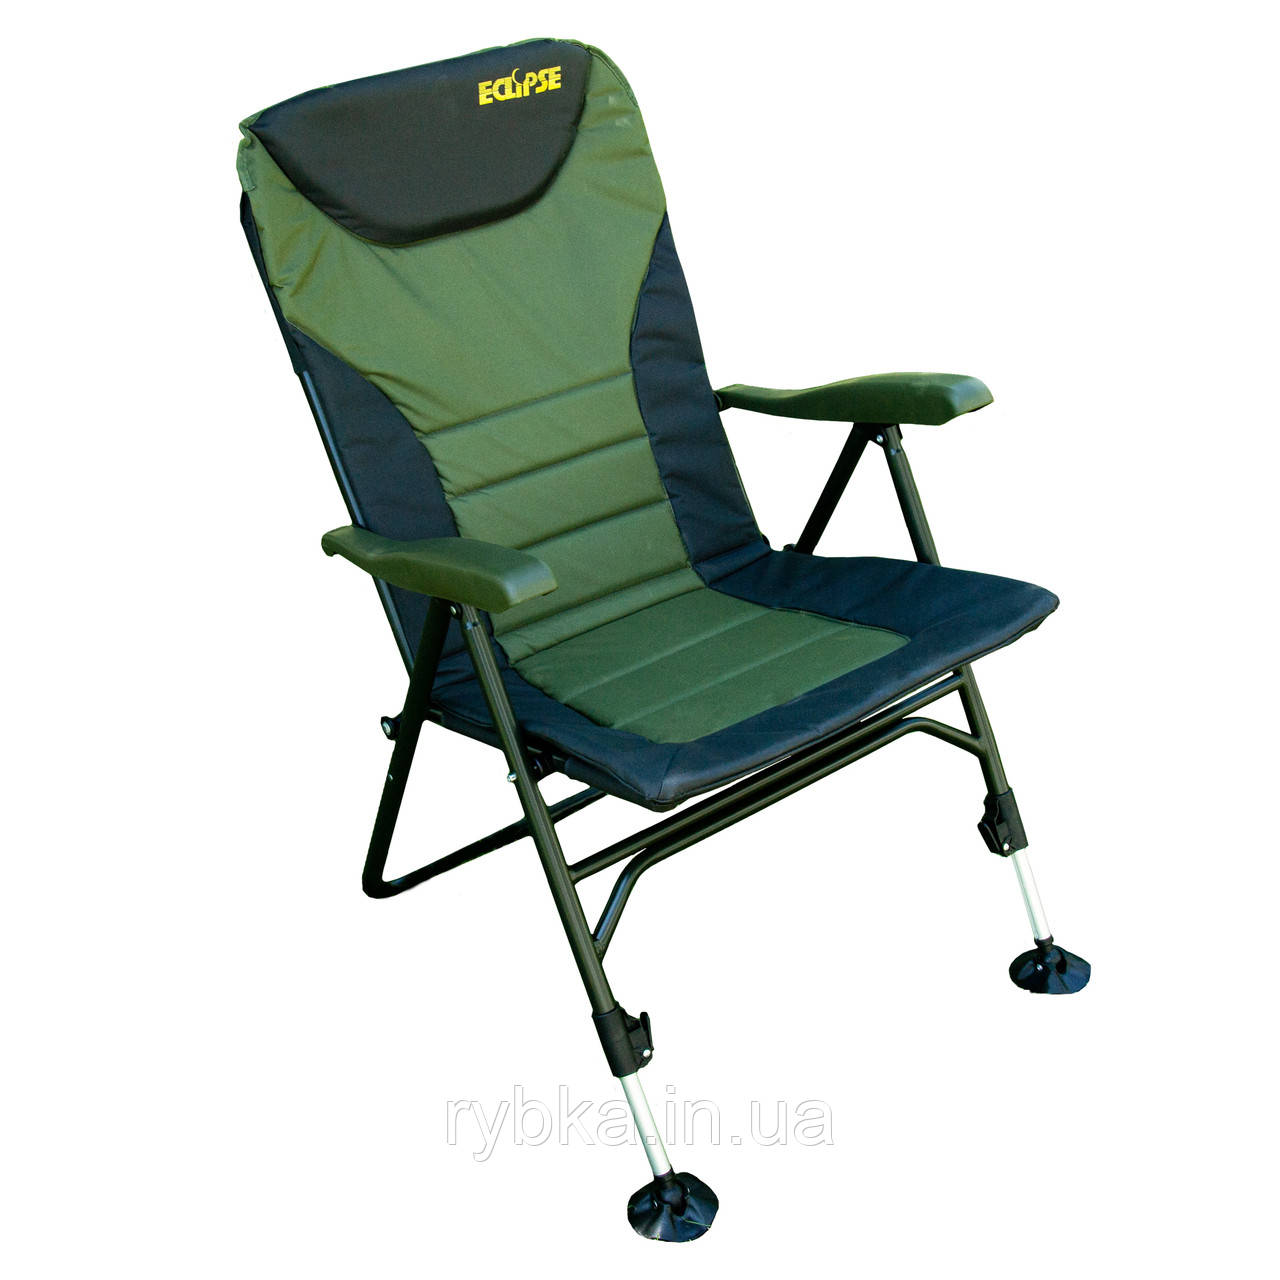 Крісло корпове-фідерне Eclipse Carp PRO EC-1010-B для риболовлі